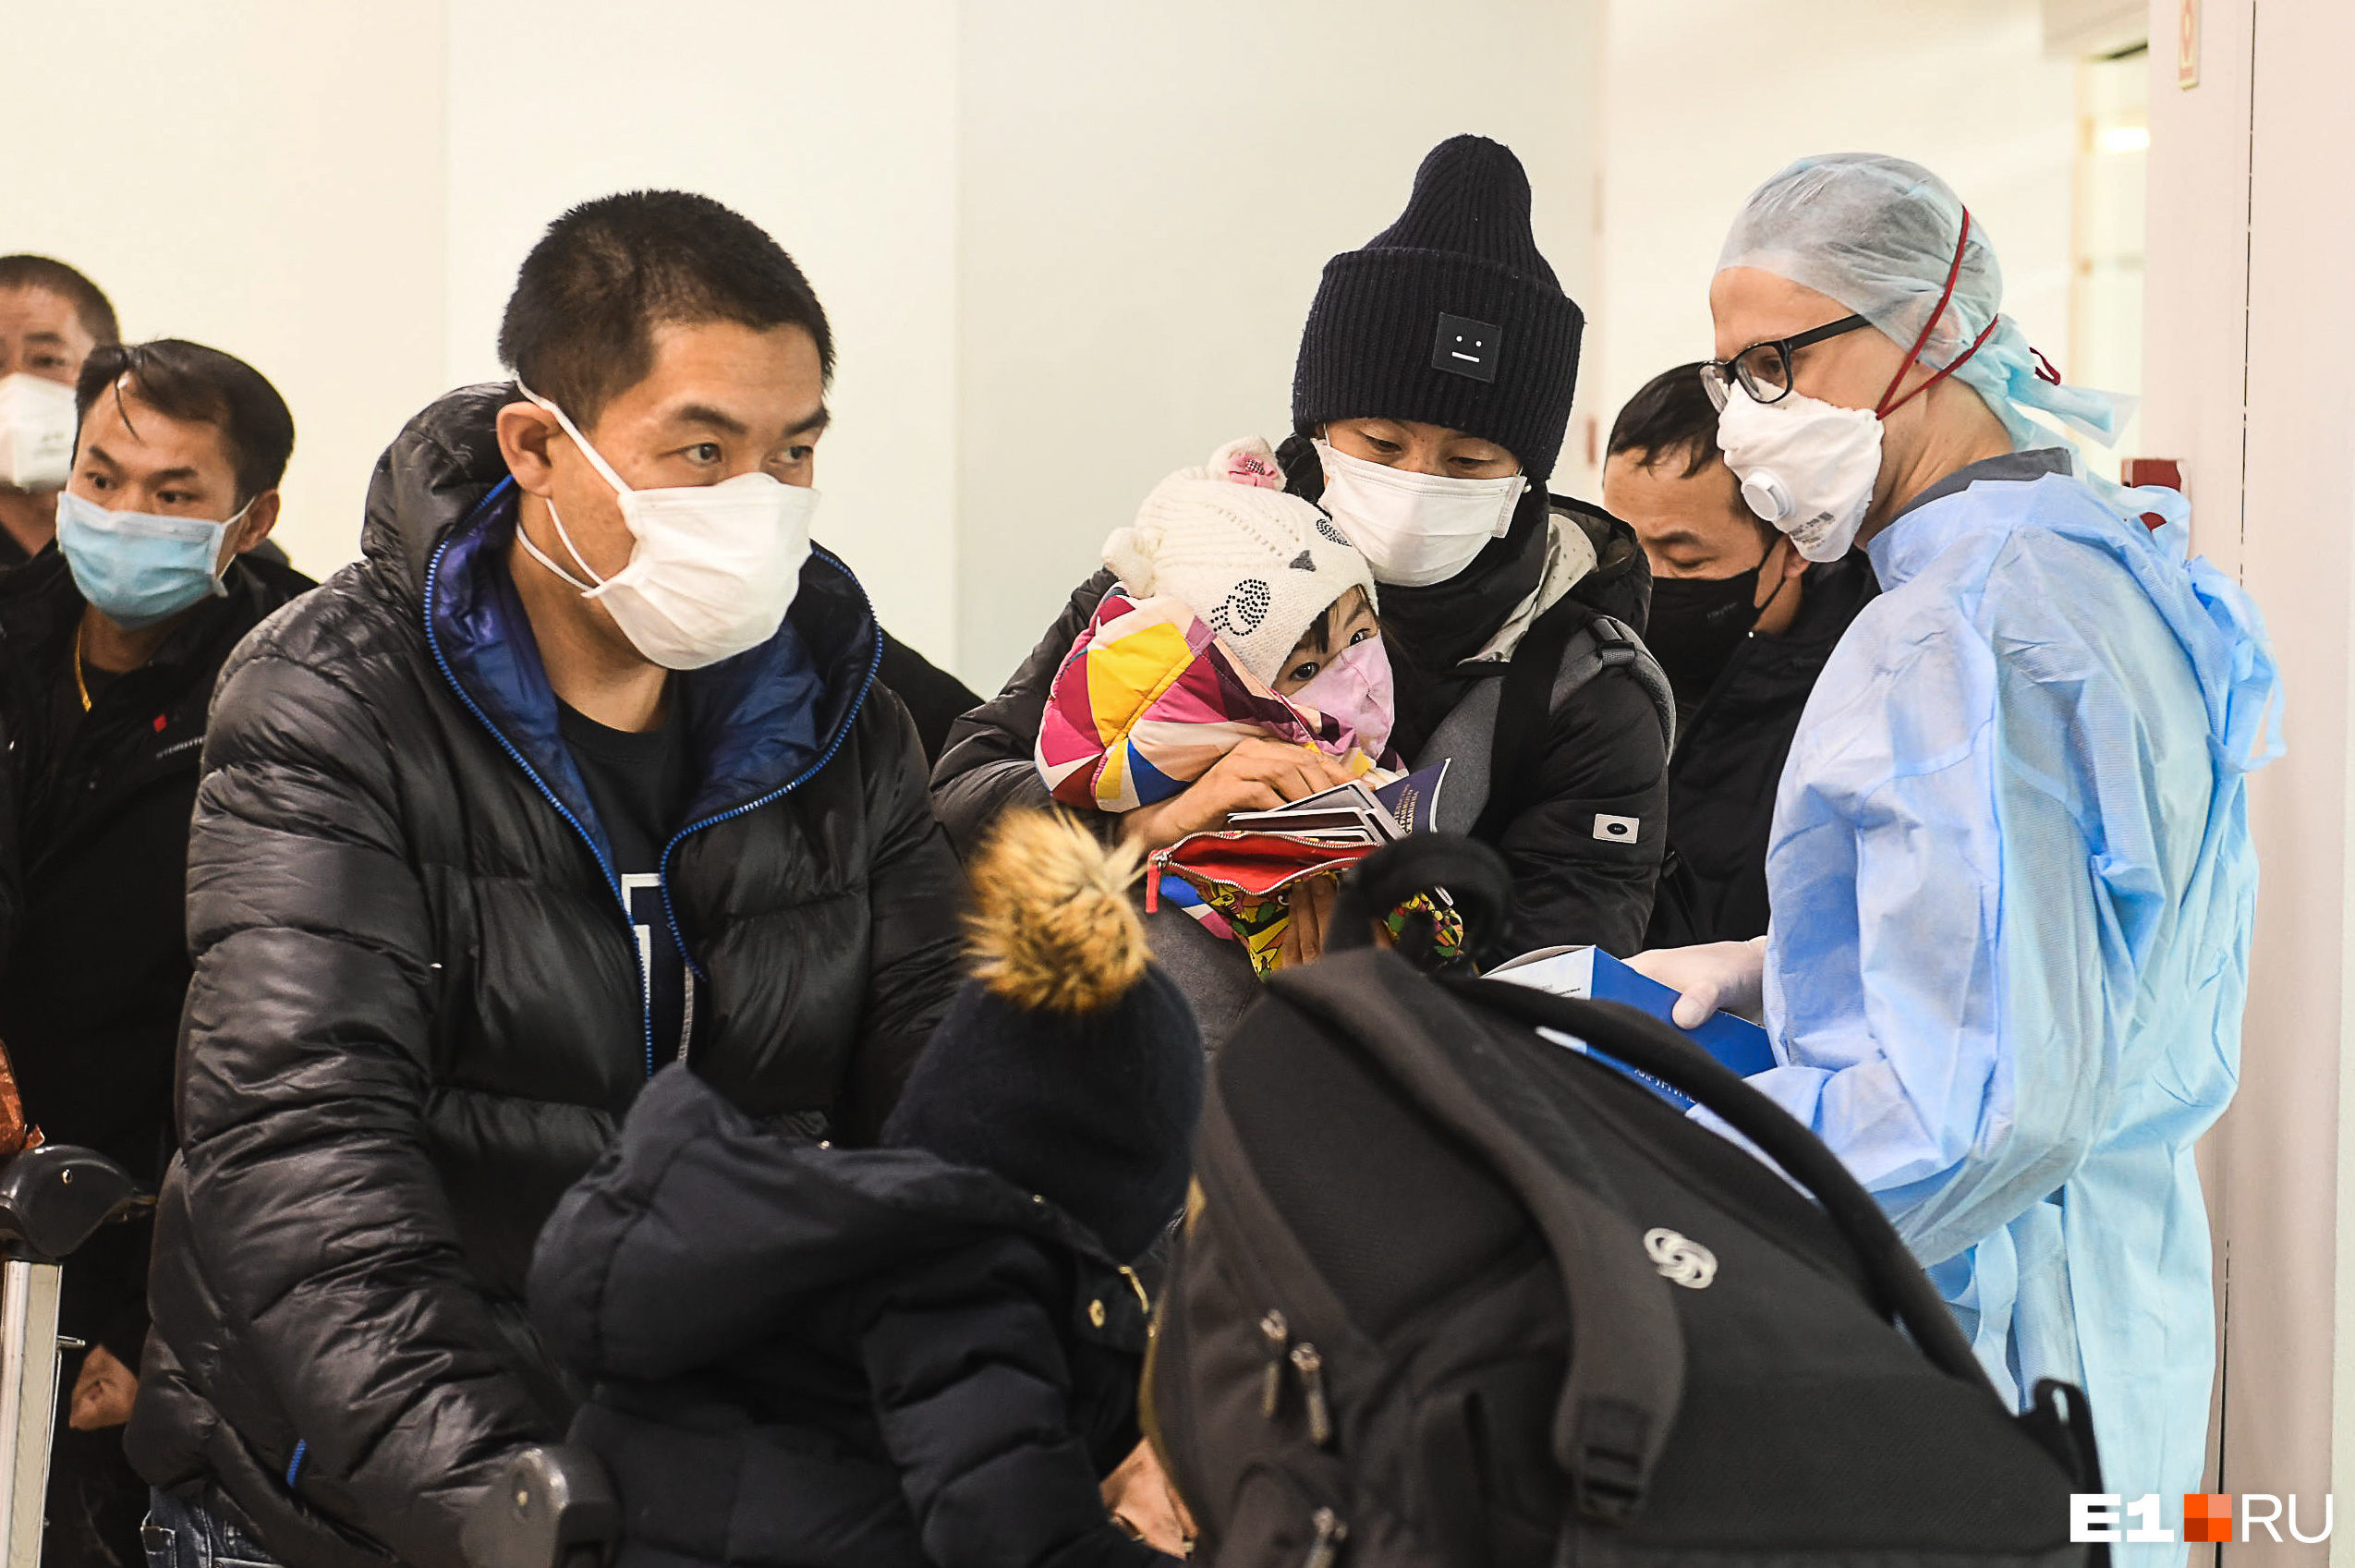 Встреча пассажиров рейса из Пекина в начале пандемии